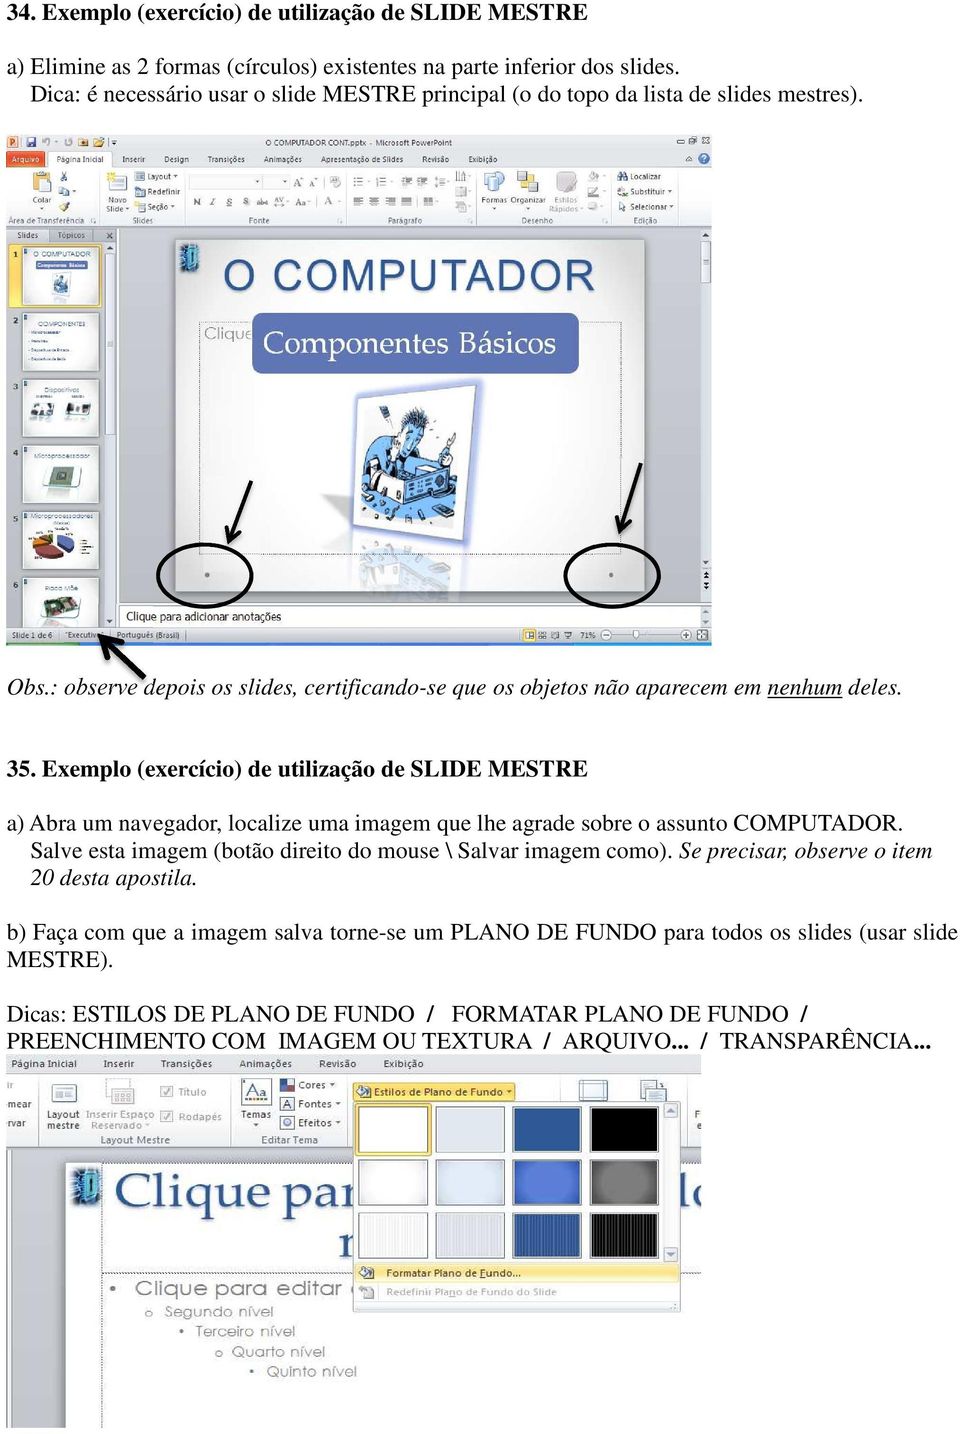 Exemplo (exercício) de utilização de SLIDE MESTRE a) Abra um navegador, localize uma imagem que lhe agrade sobre o assunto COMPUTADOR.